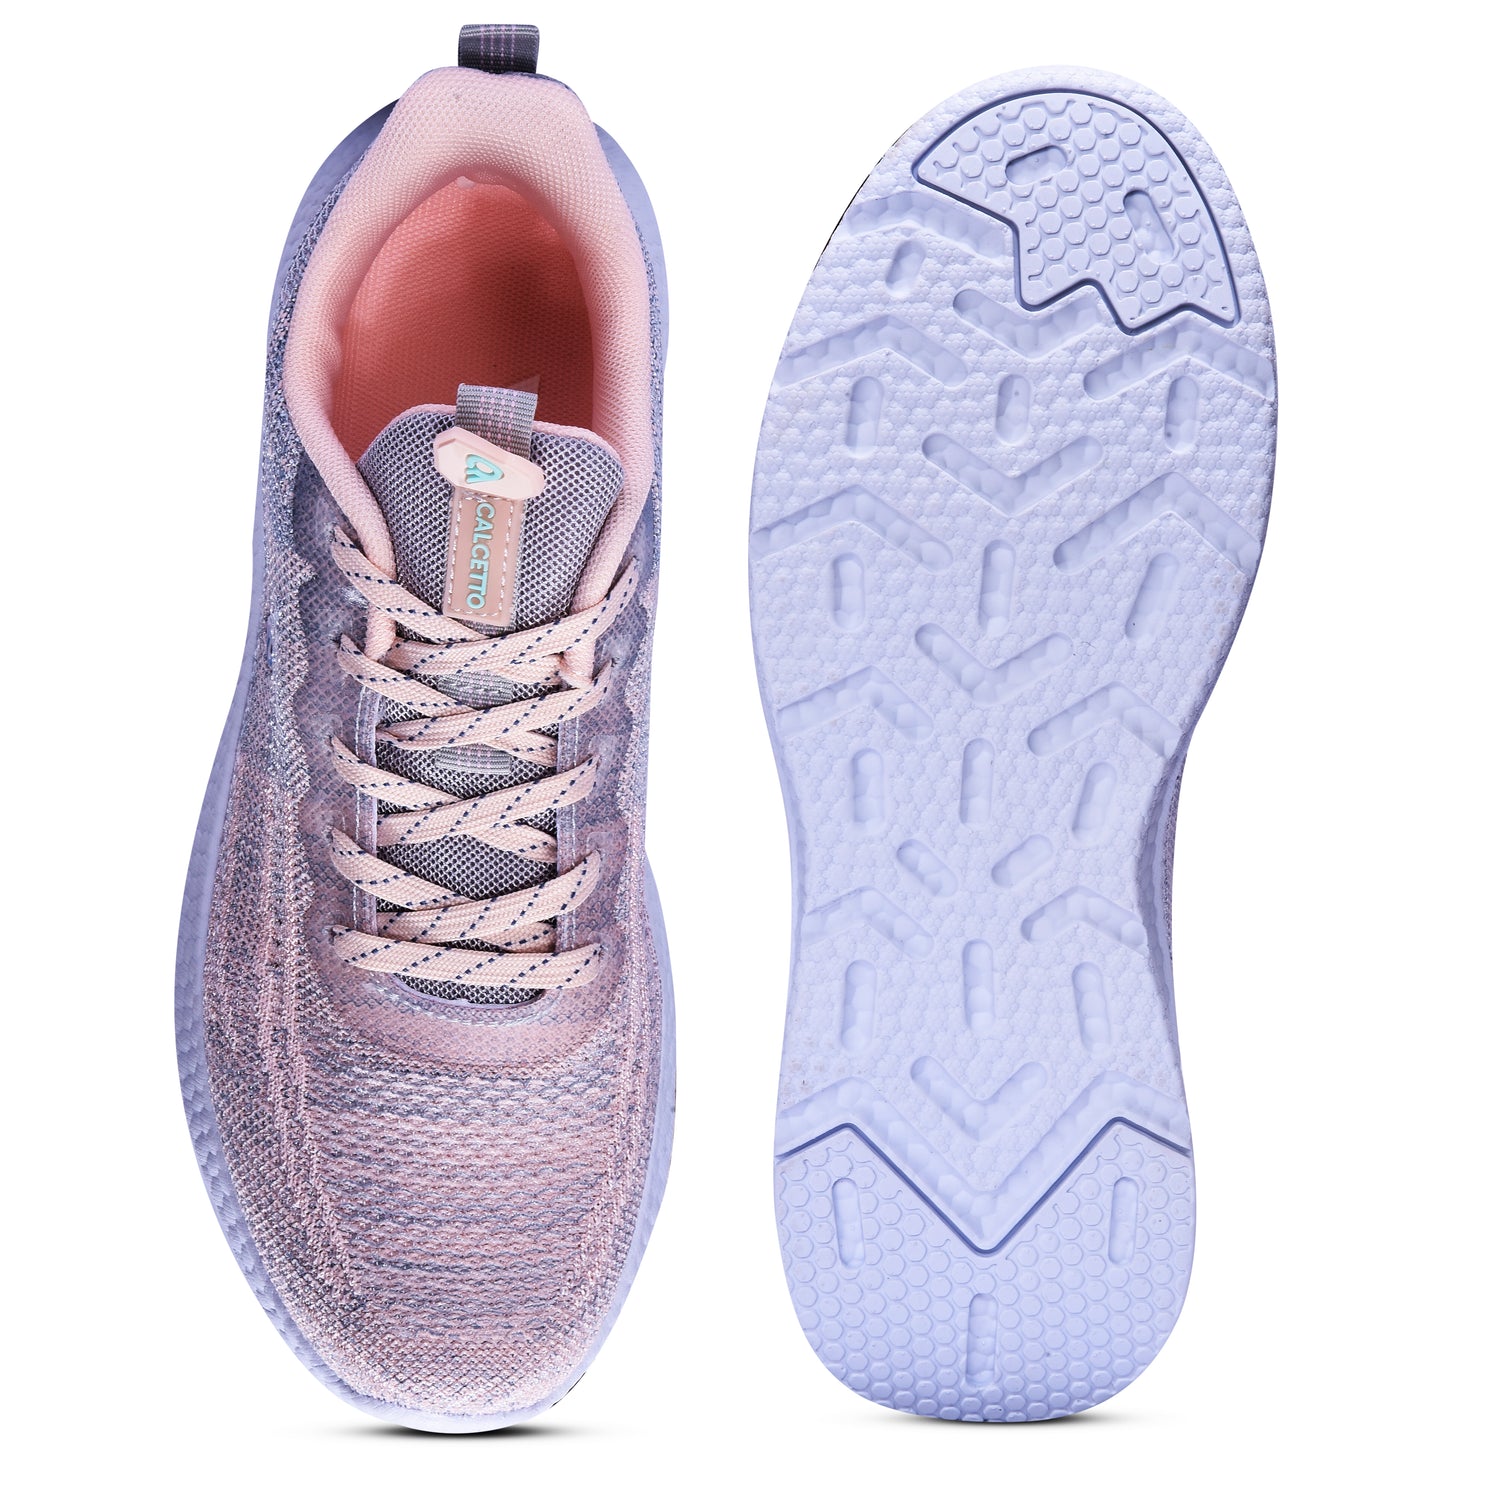 Calcetto CLT-9826 L Grey Peach Casual Shoe For Women